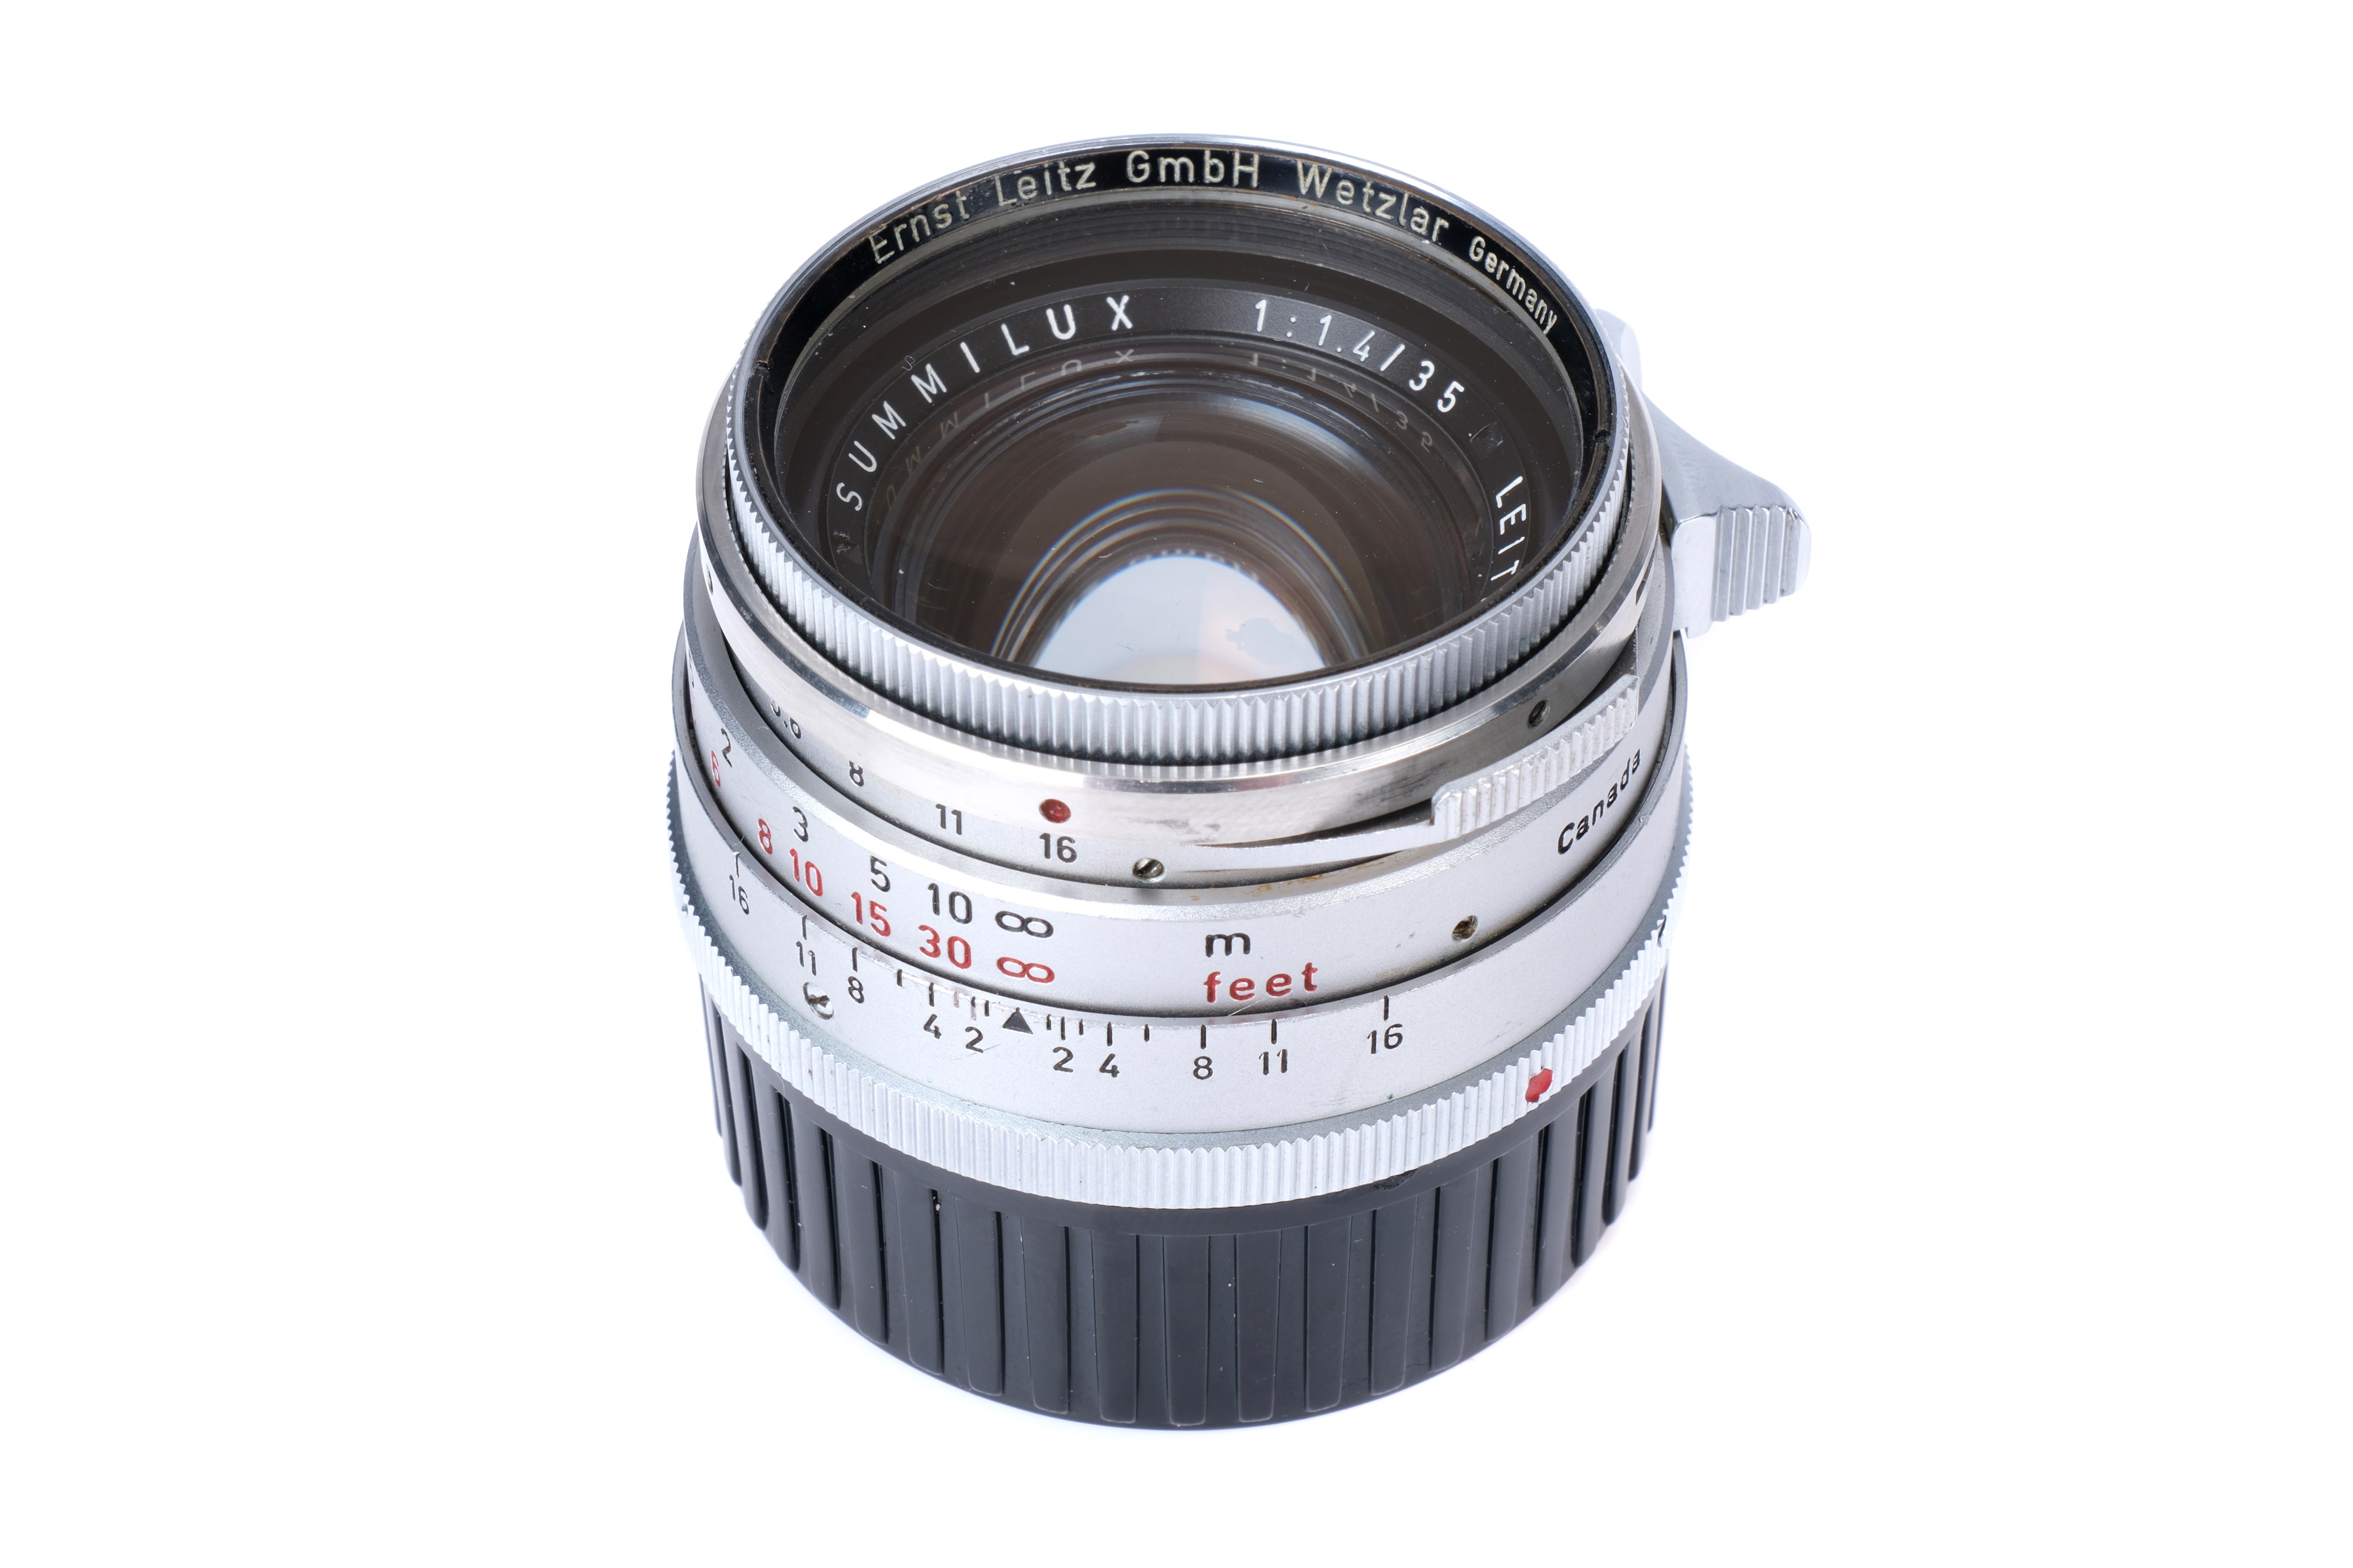 A Leitz Summilux 'Steel Rim' f/1.4 35mm Lens, - Image 5 of 6